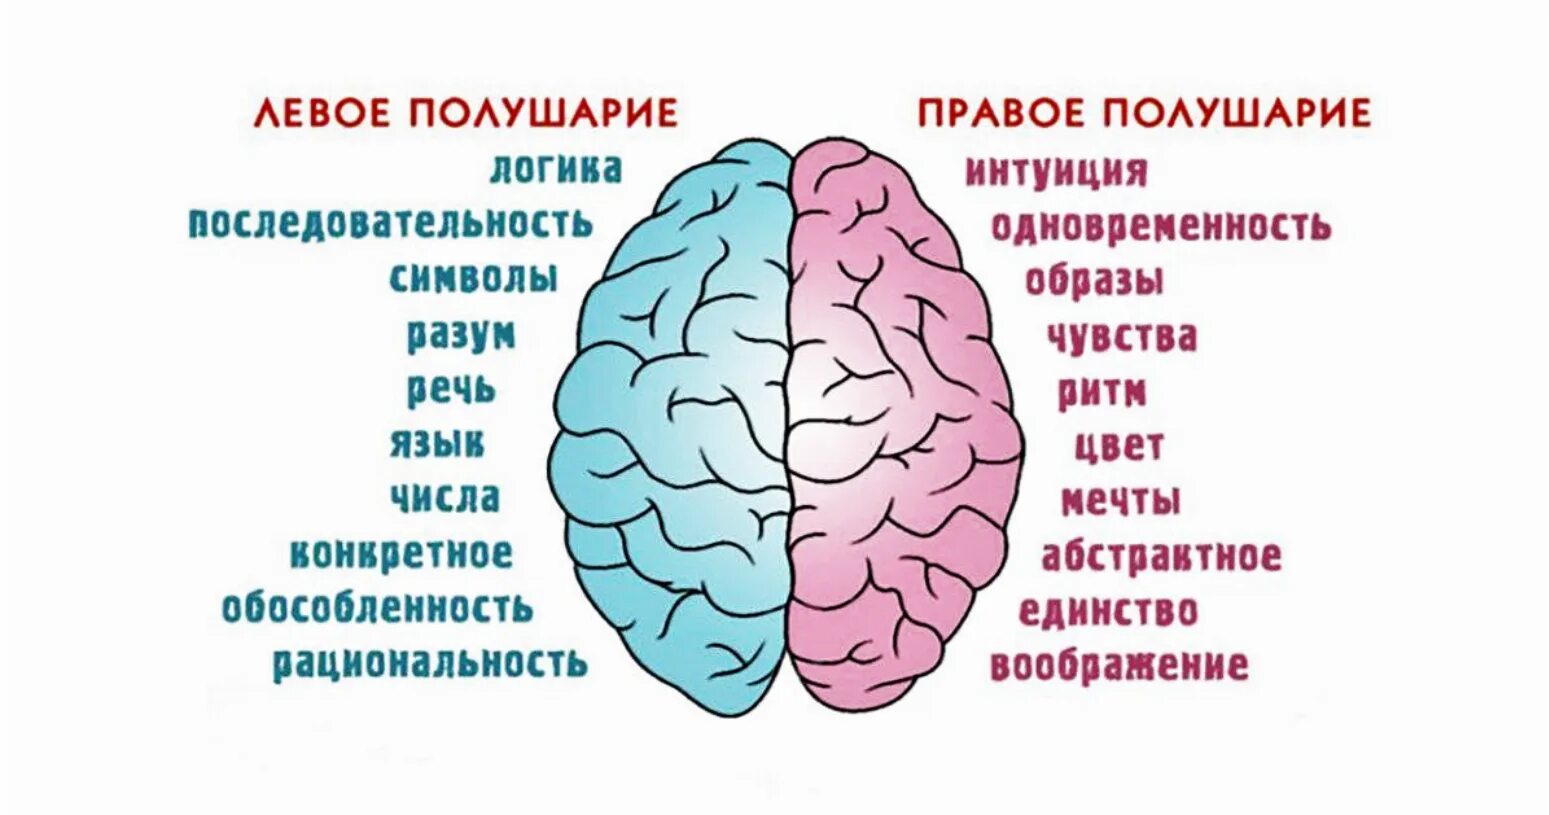 Полушария мозга девое т правое. За что отвечает правое полушарие. За что отвечают полушария головного мозга человека левое и правое. За какие процессы головного мозга отвечает правое полушарие.